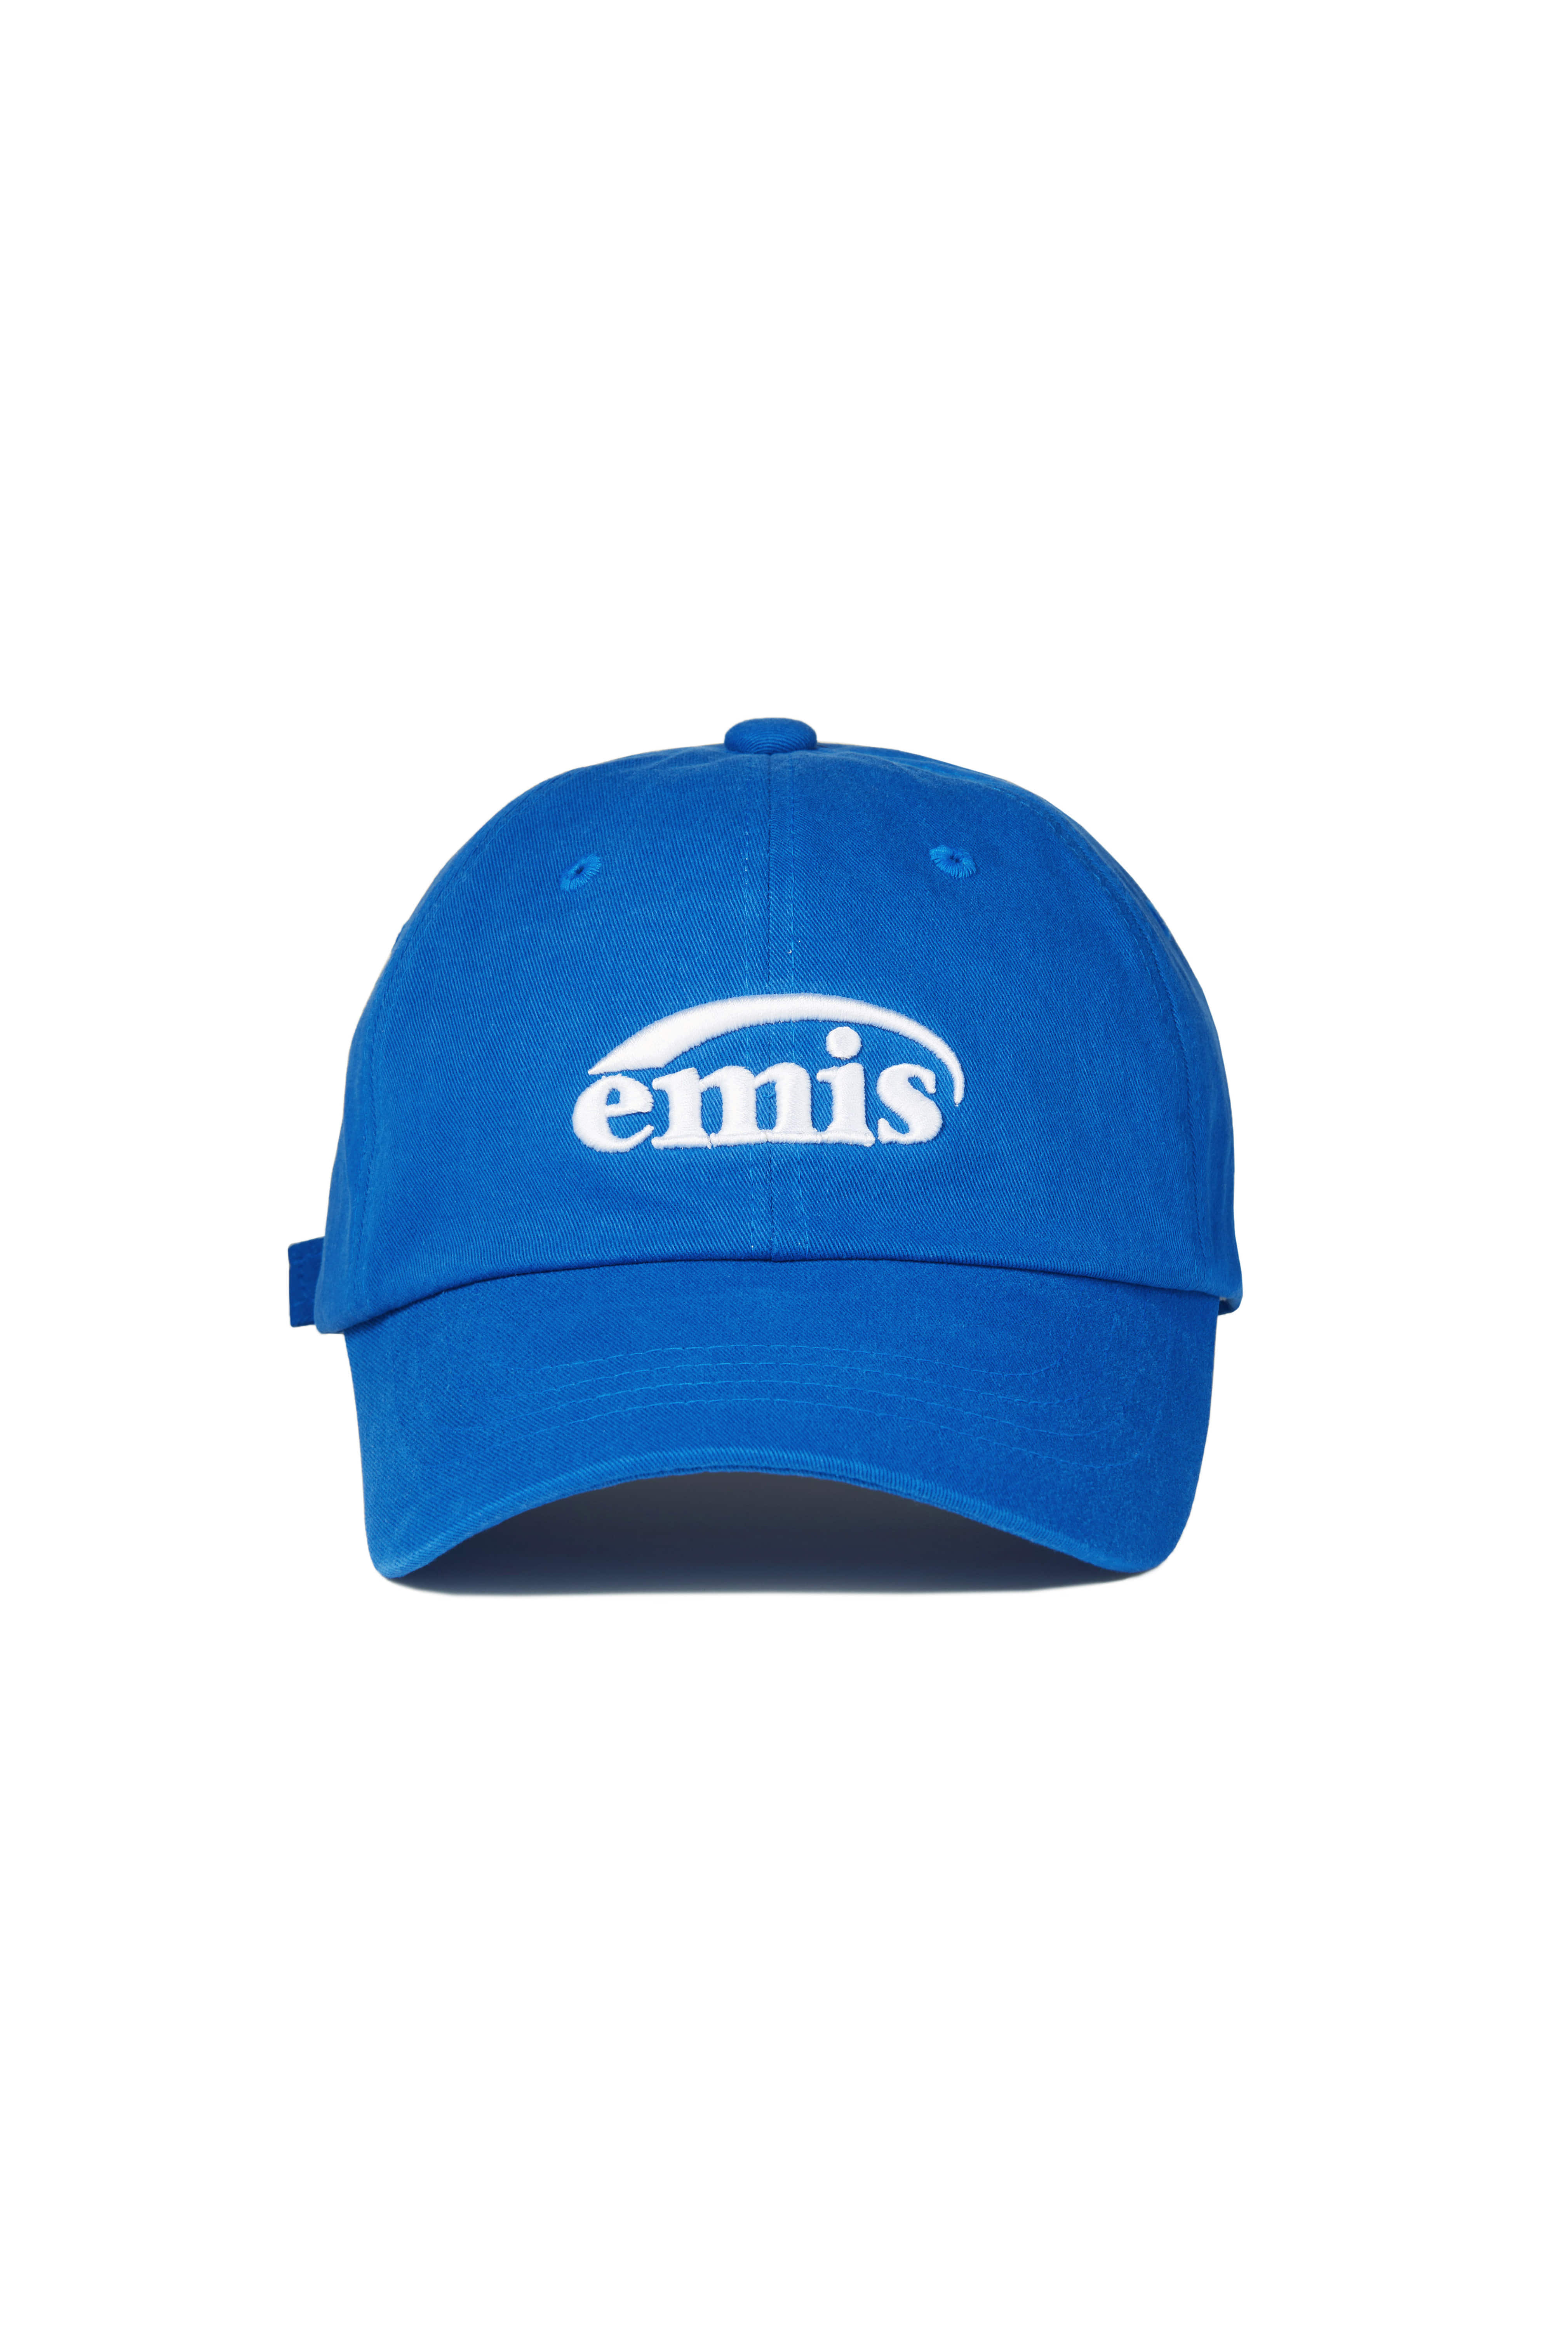 NEW LOGO BALL CAP-BLUE